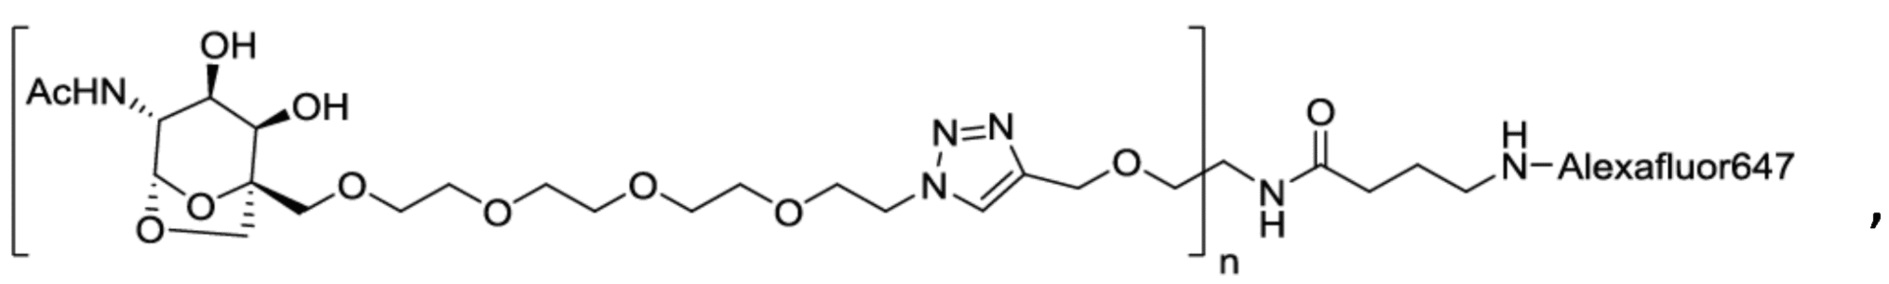 Замещенные-6,8-диоксабицикло[3.2.1.]октан-2,3-диольные соединения в качестве агентов, нацеленных на ASGPR